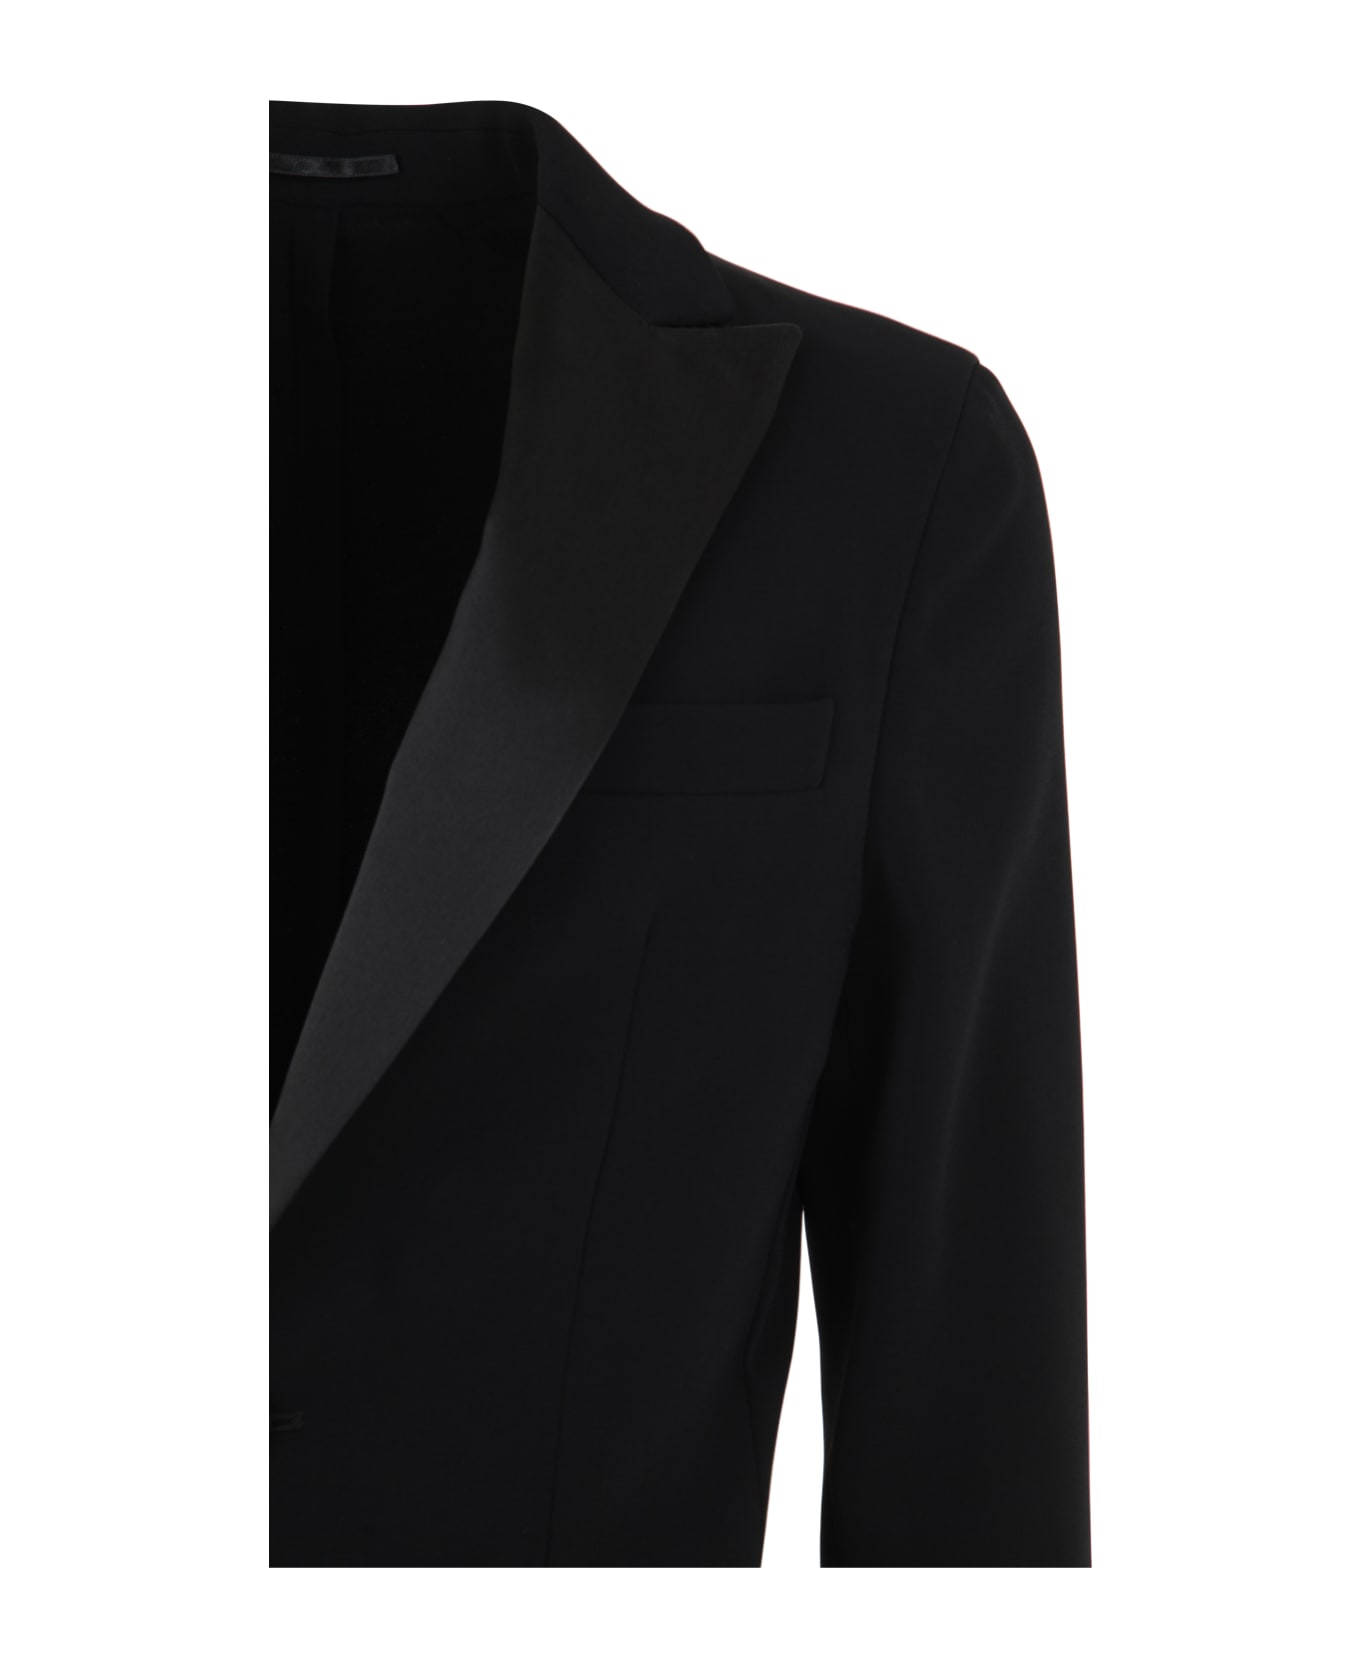 Dsquared2 Miami Suit - Black スーツ